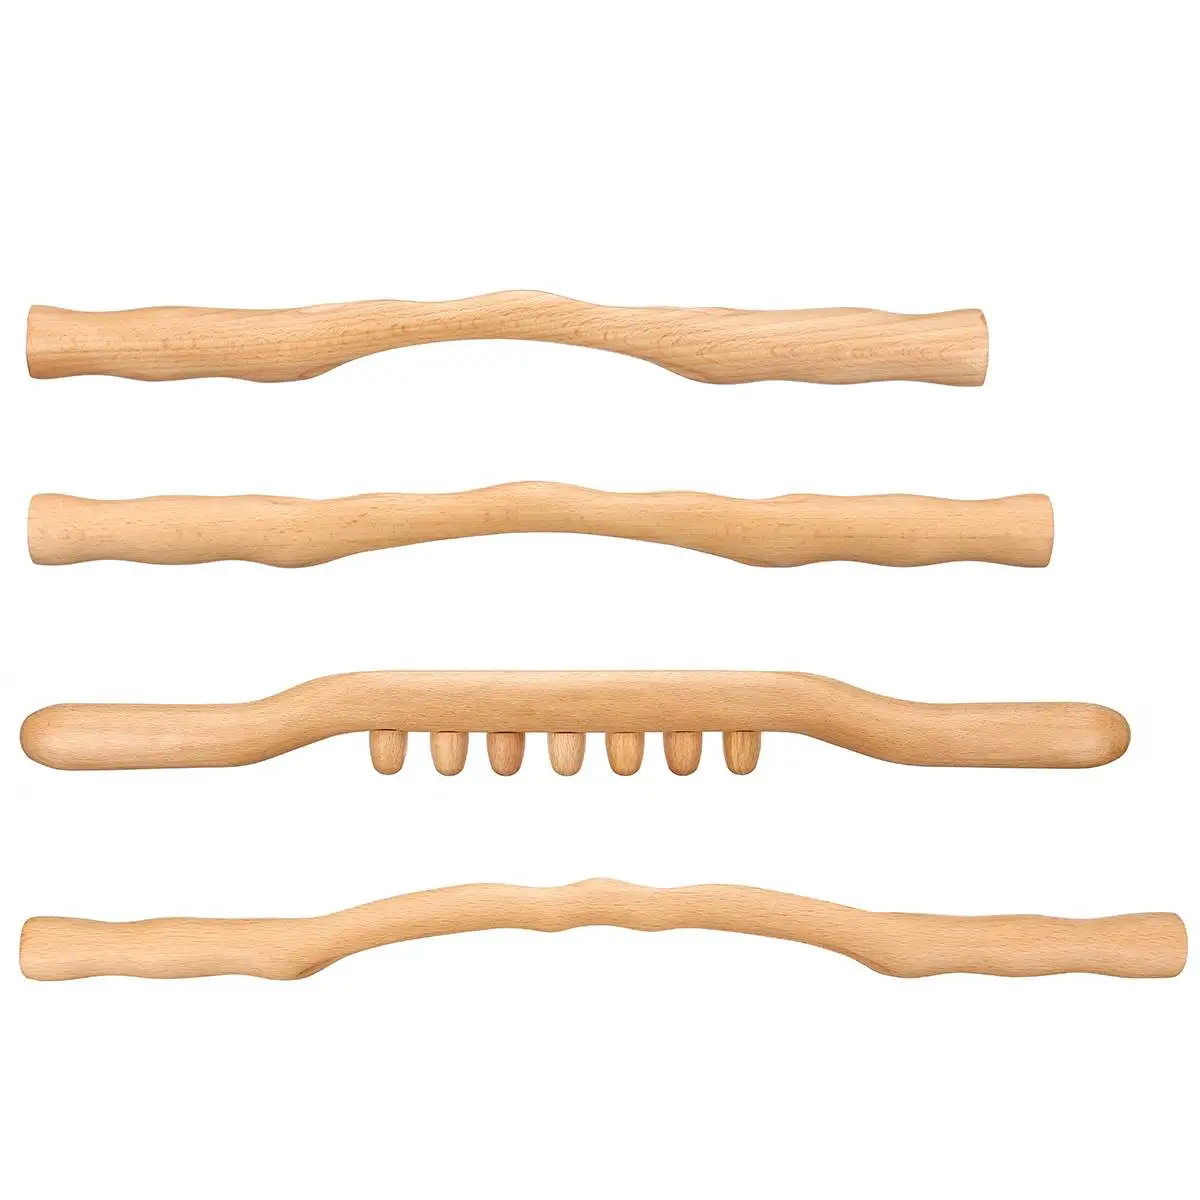 4 шт. деревянный Gua Sha Stick эффективный здоровый GuaSha Rob для спины шеи плеча живота ног массаж тела похудение Guasha Инструмент